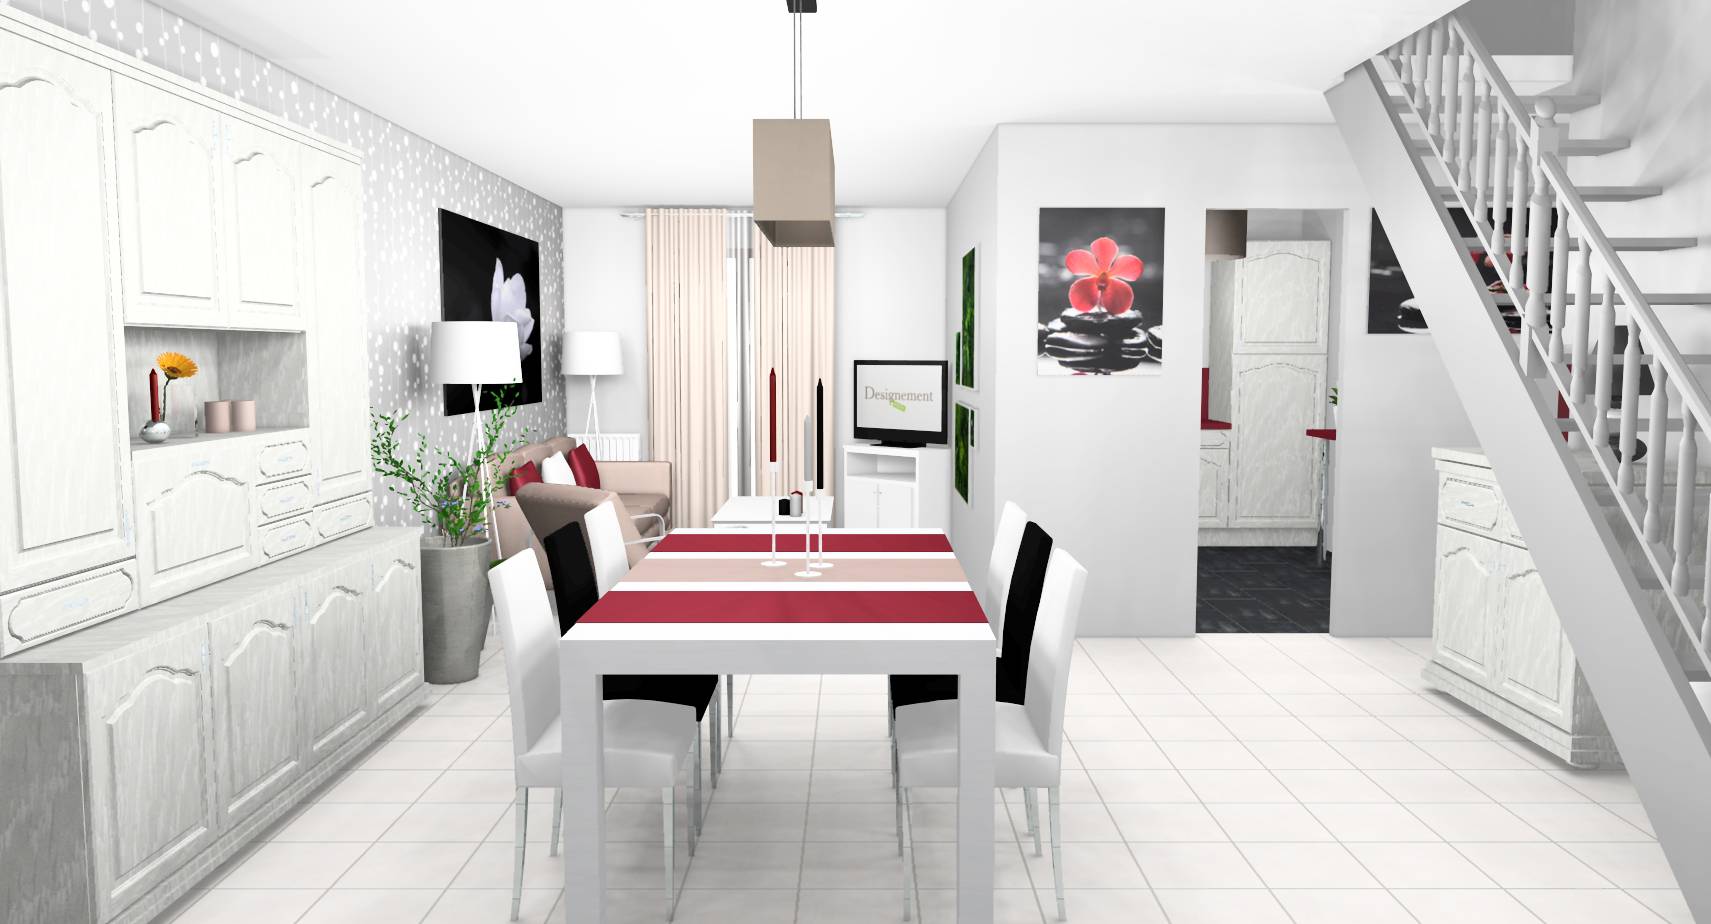 Salle à manger séjour campagne chic modernisée customisation mobilier cérusé gris blanc rouge noir beige